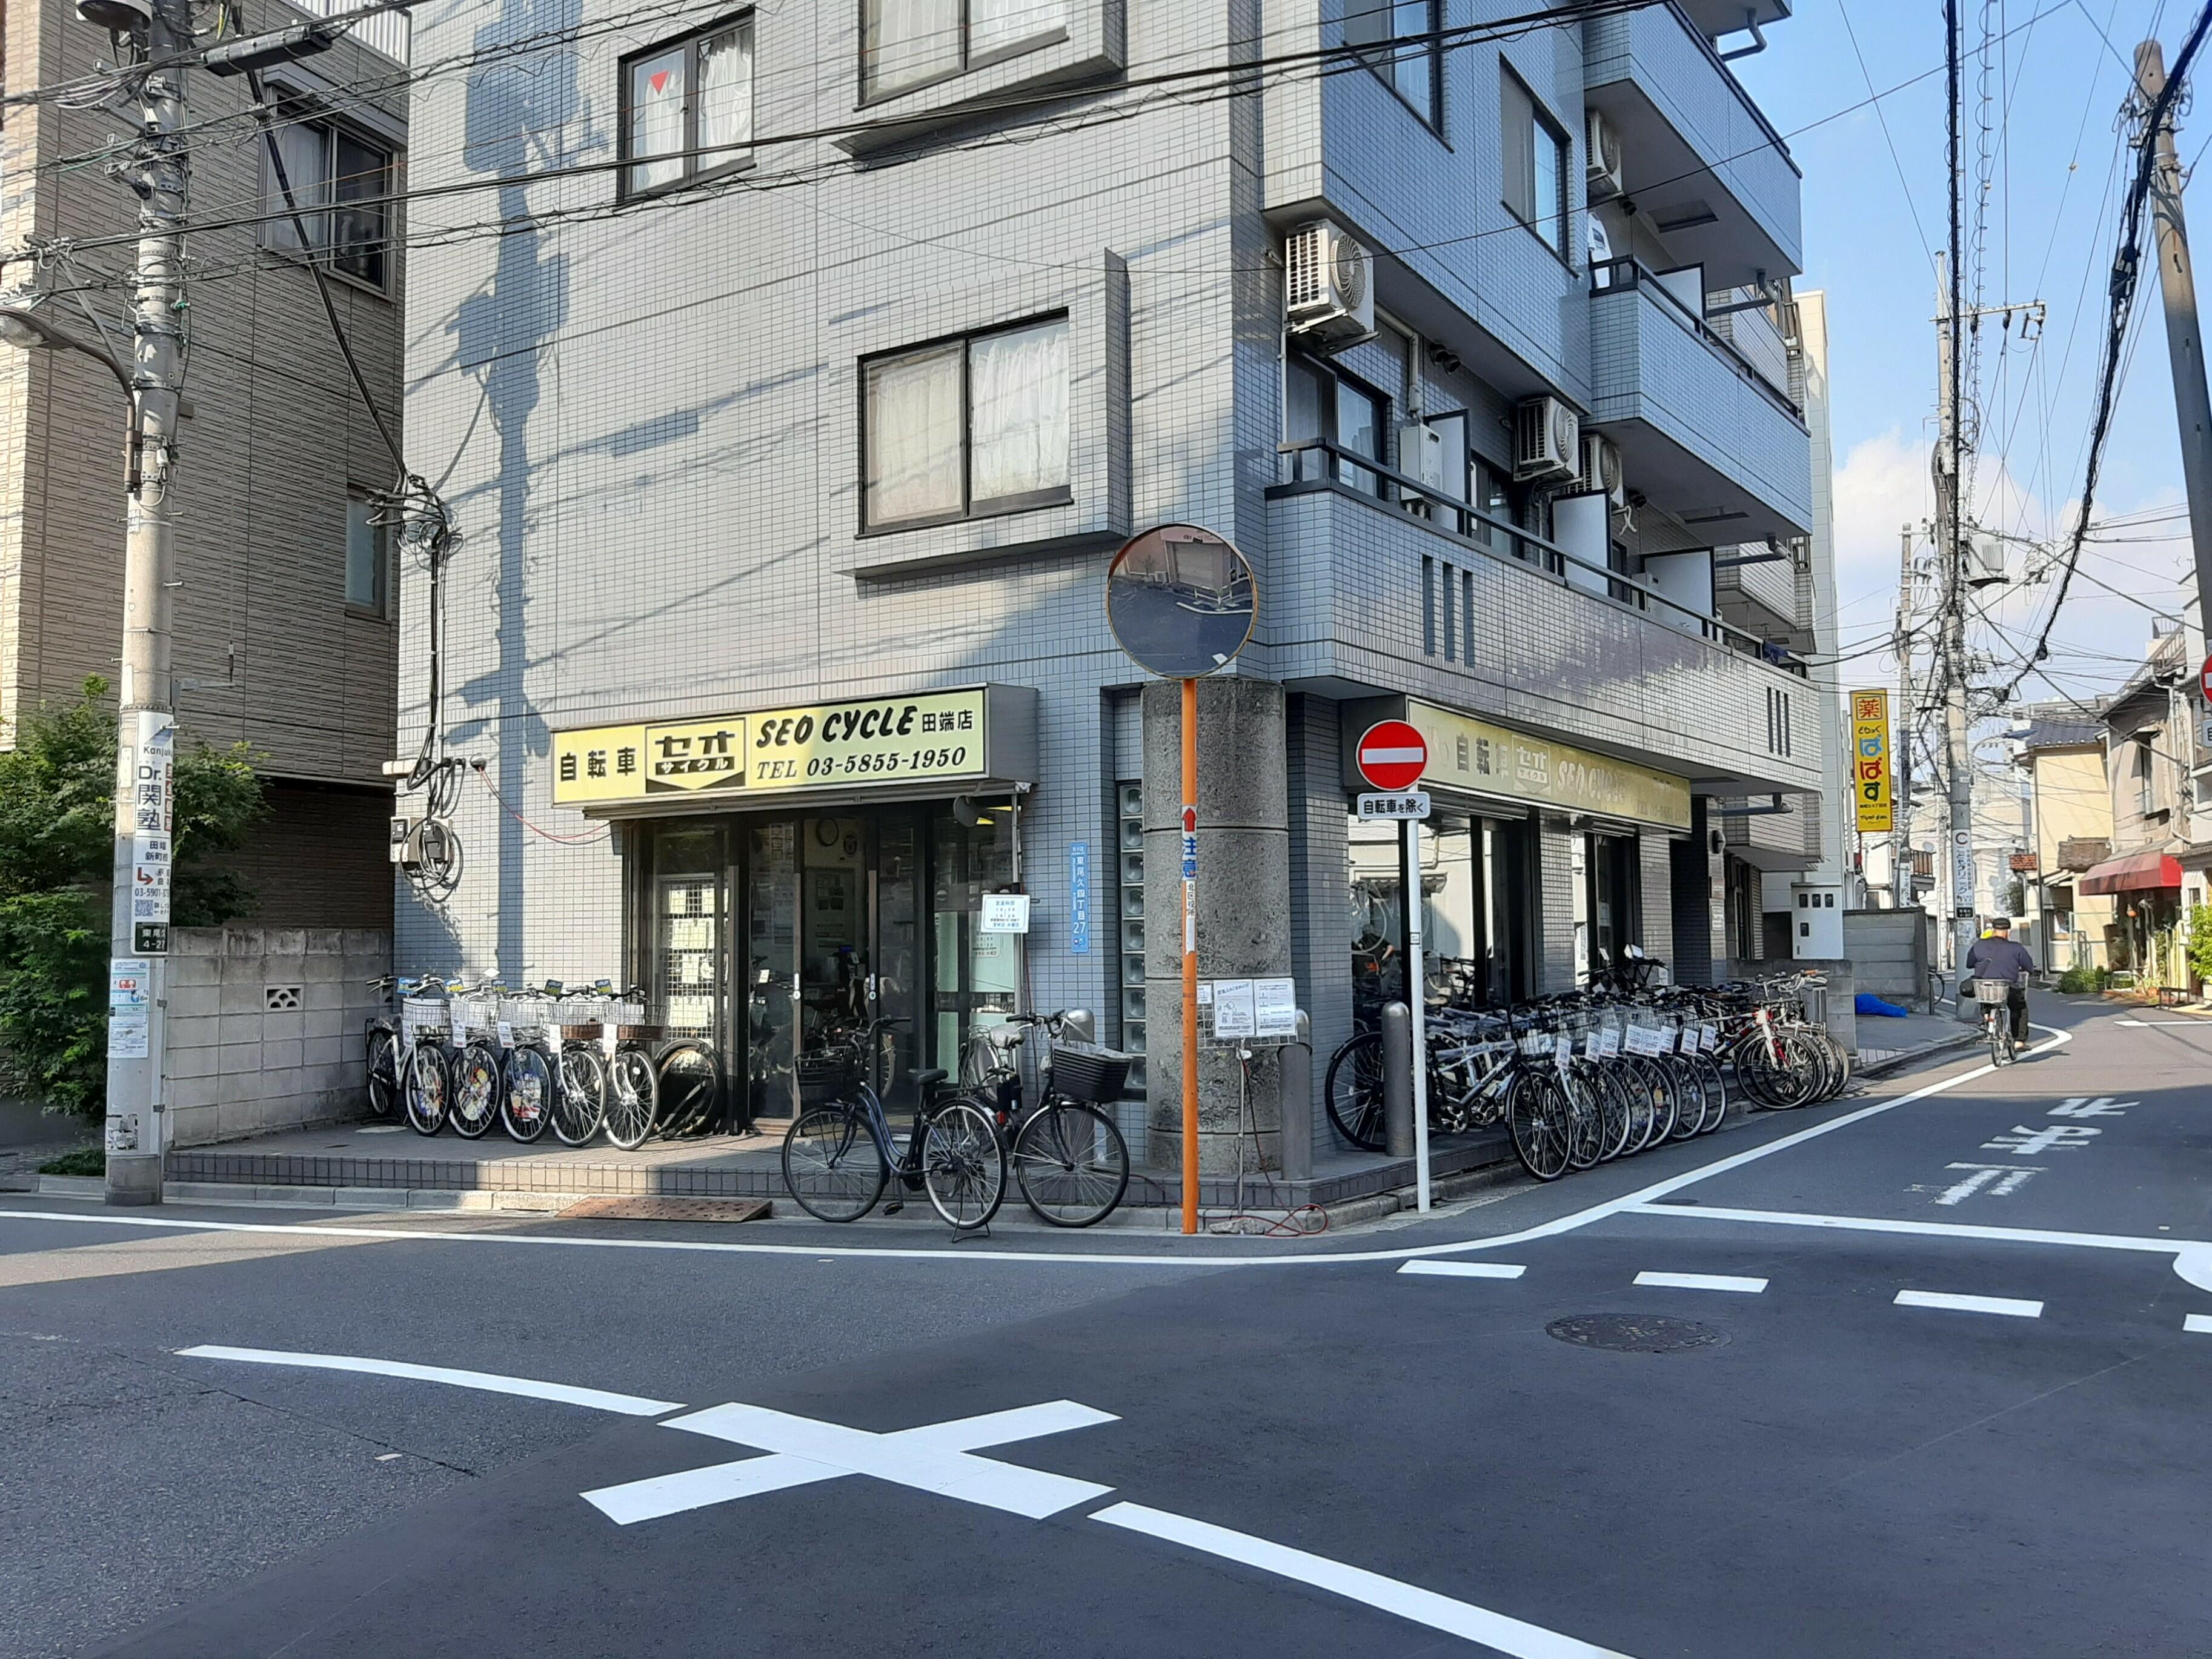 セオサイクル 田端店 - 荒川区東尾久/自転車店 | Yahoo!マップ